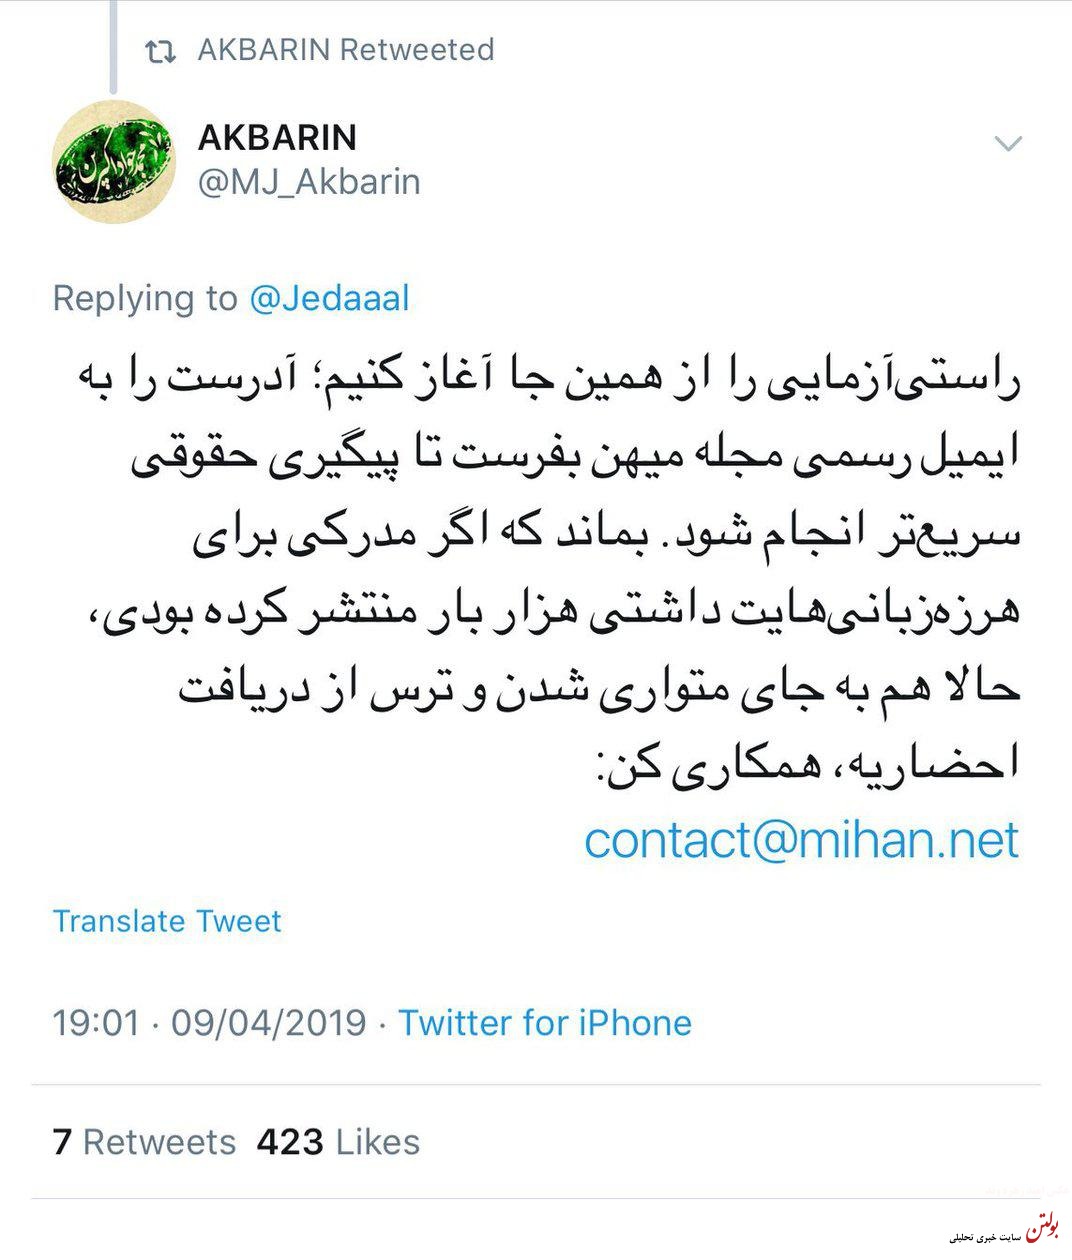 پول کثیف سعودی اپوزیسیون ایران را آلوده کرده است